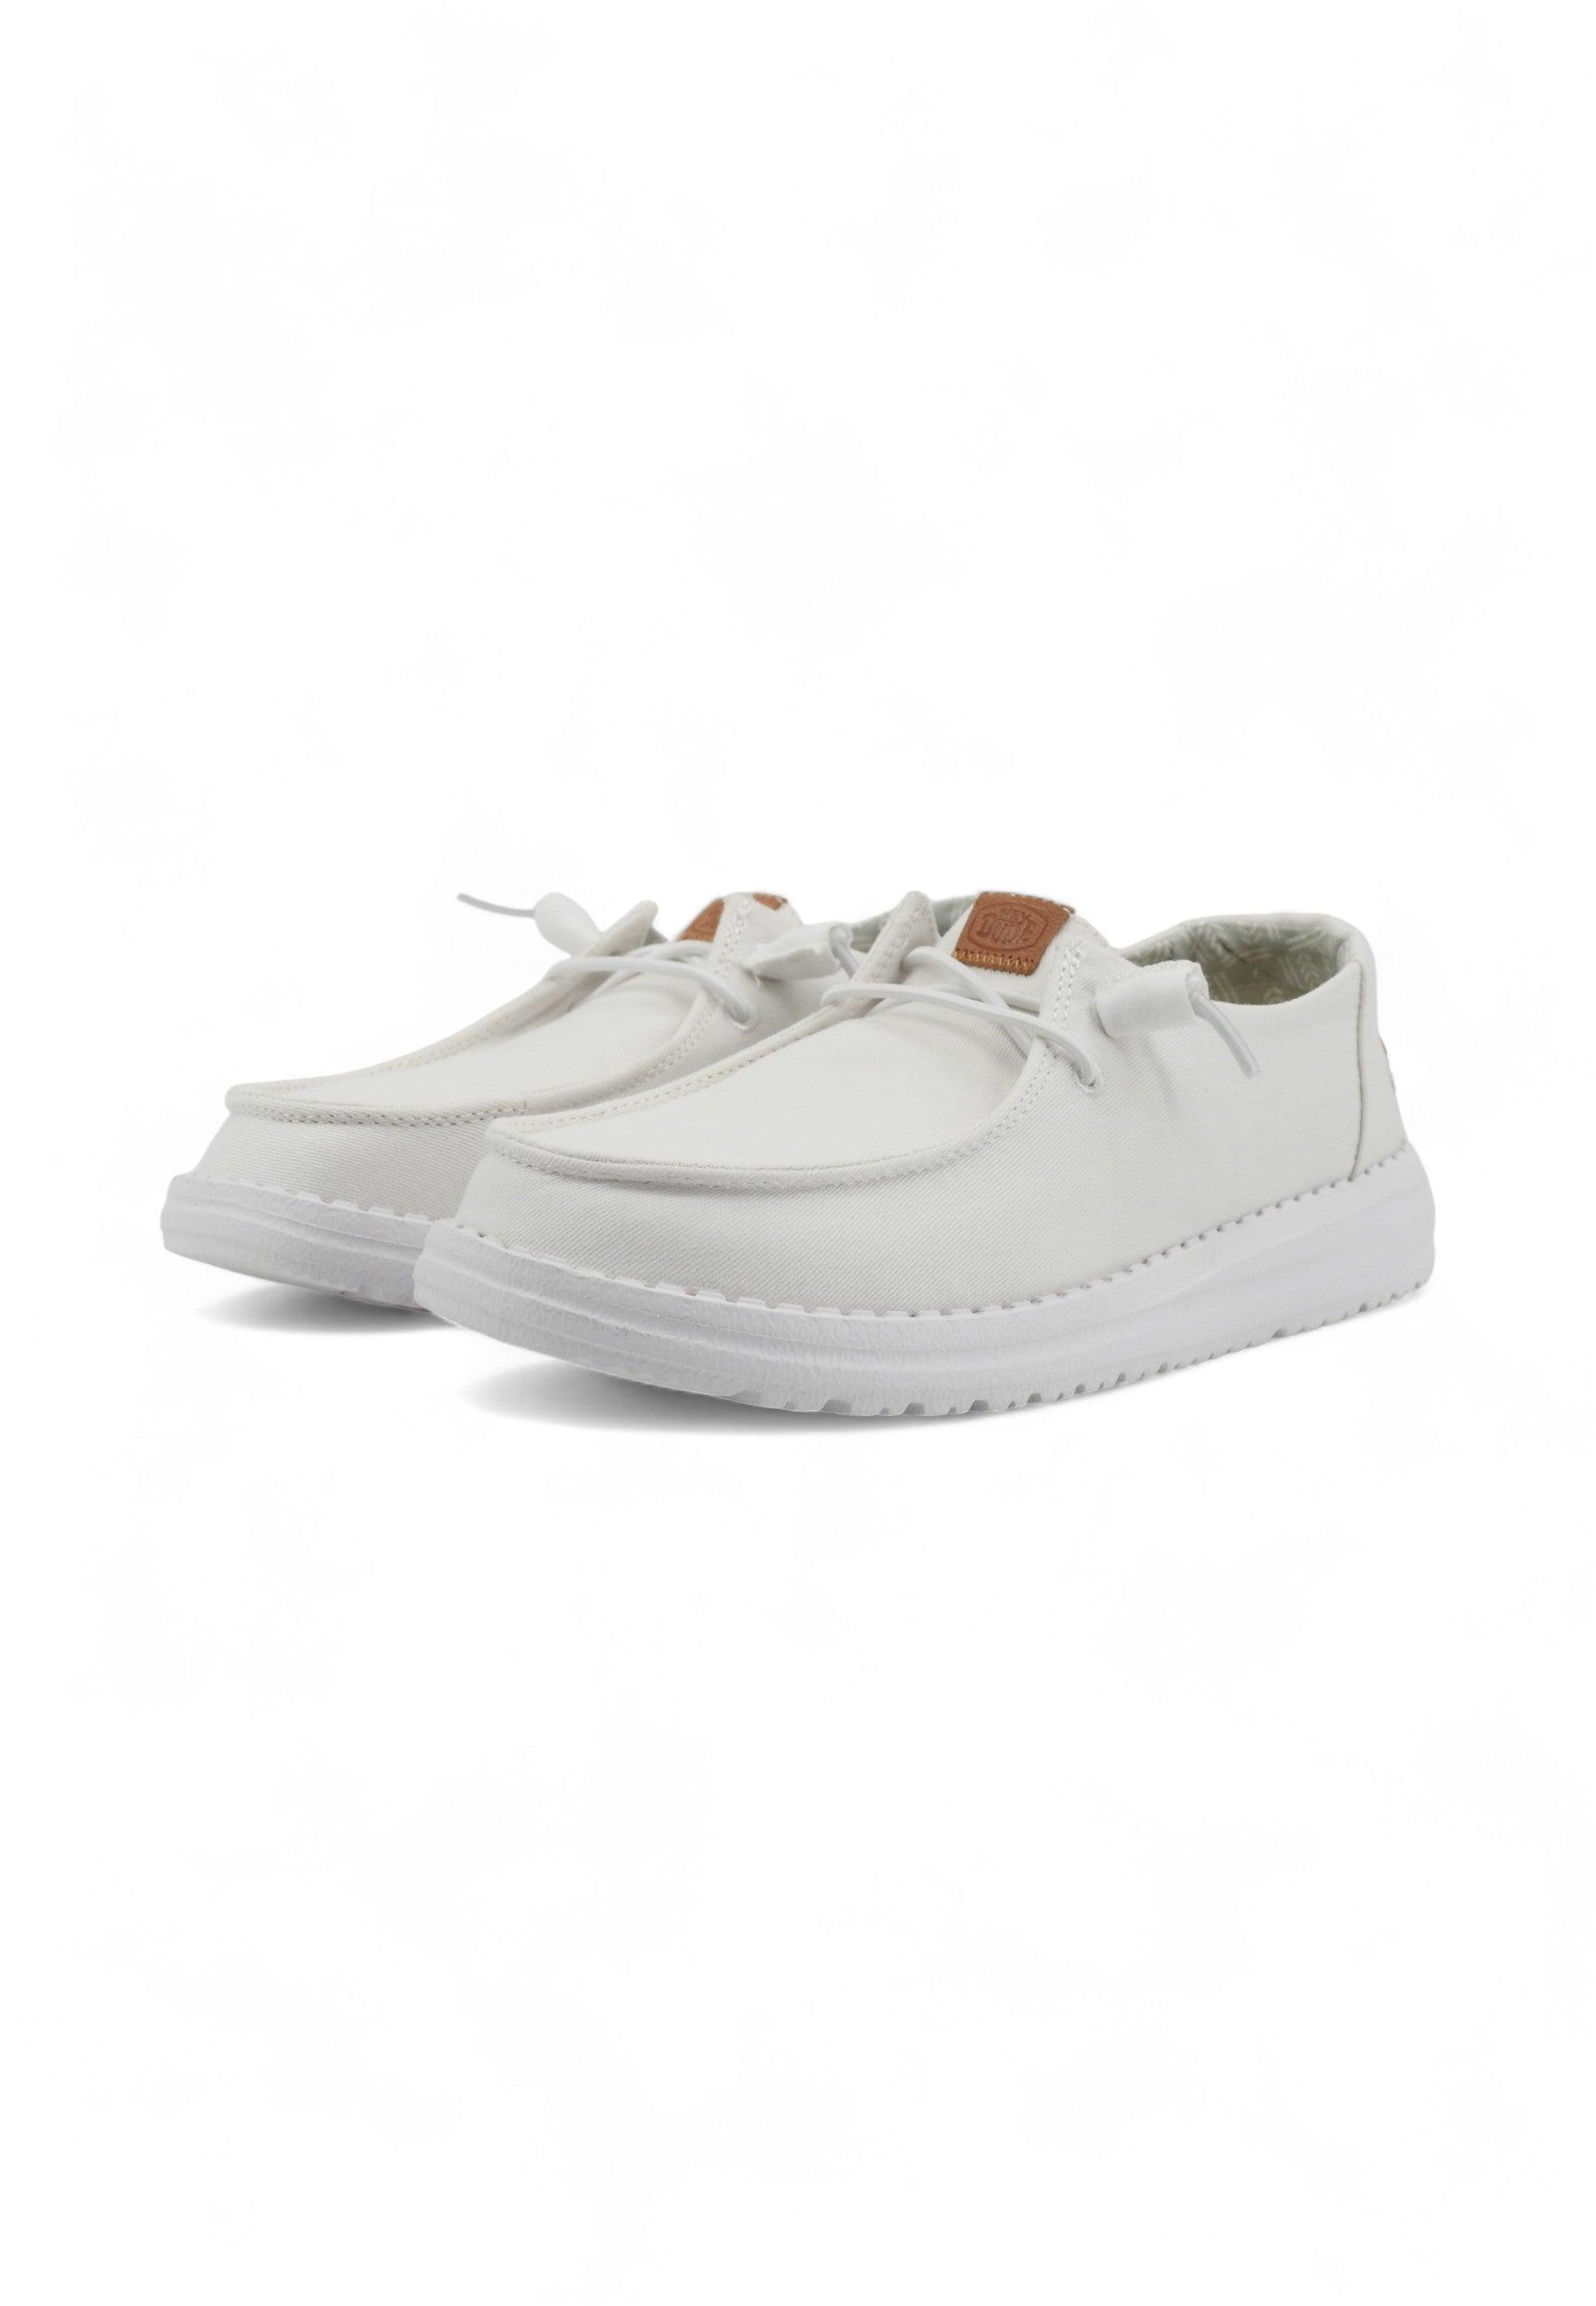 HEY DUDE Wendy Canvas Sneaker Vela Donna White 40902-100 - Sandrini Calzature e Abbigliamento